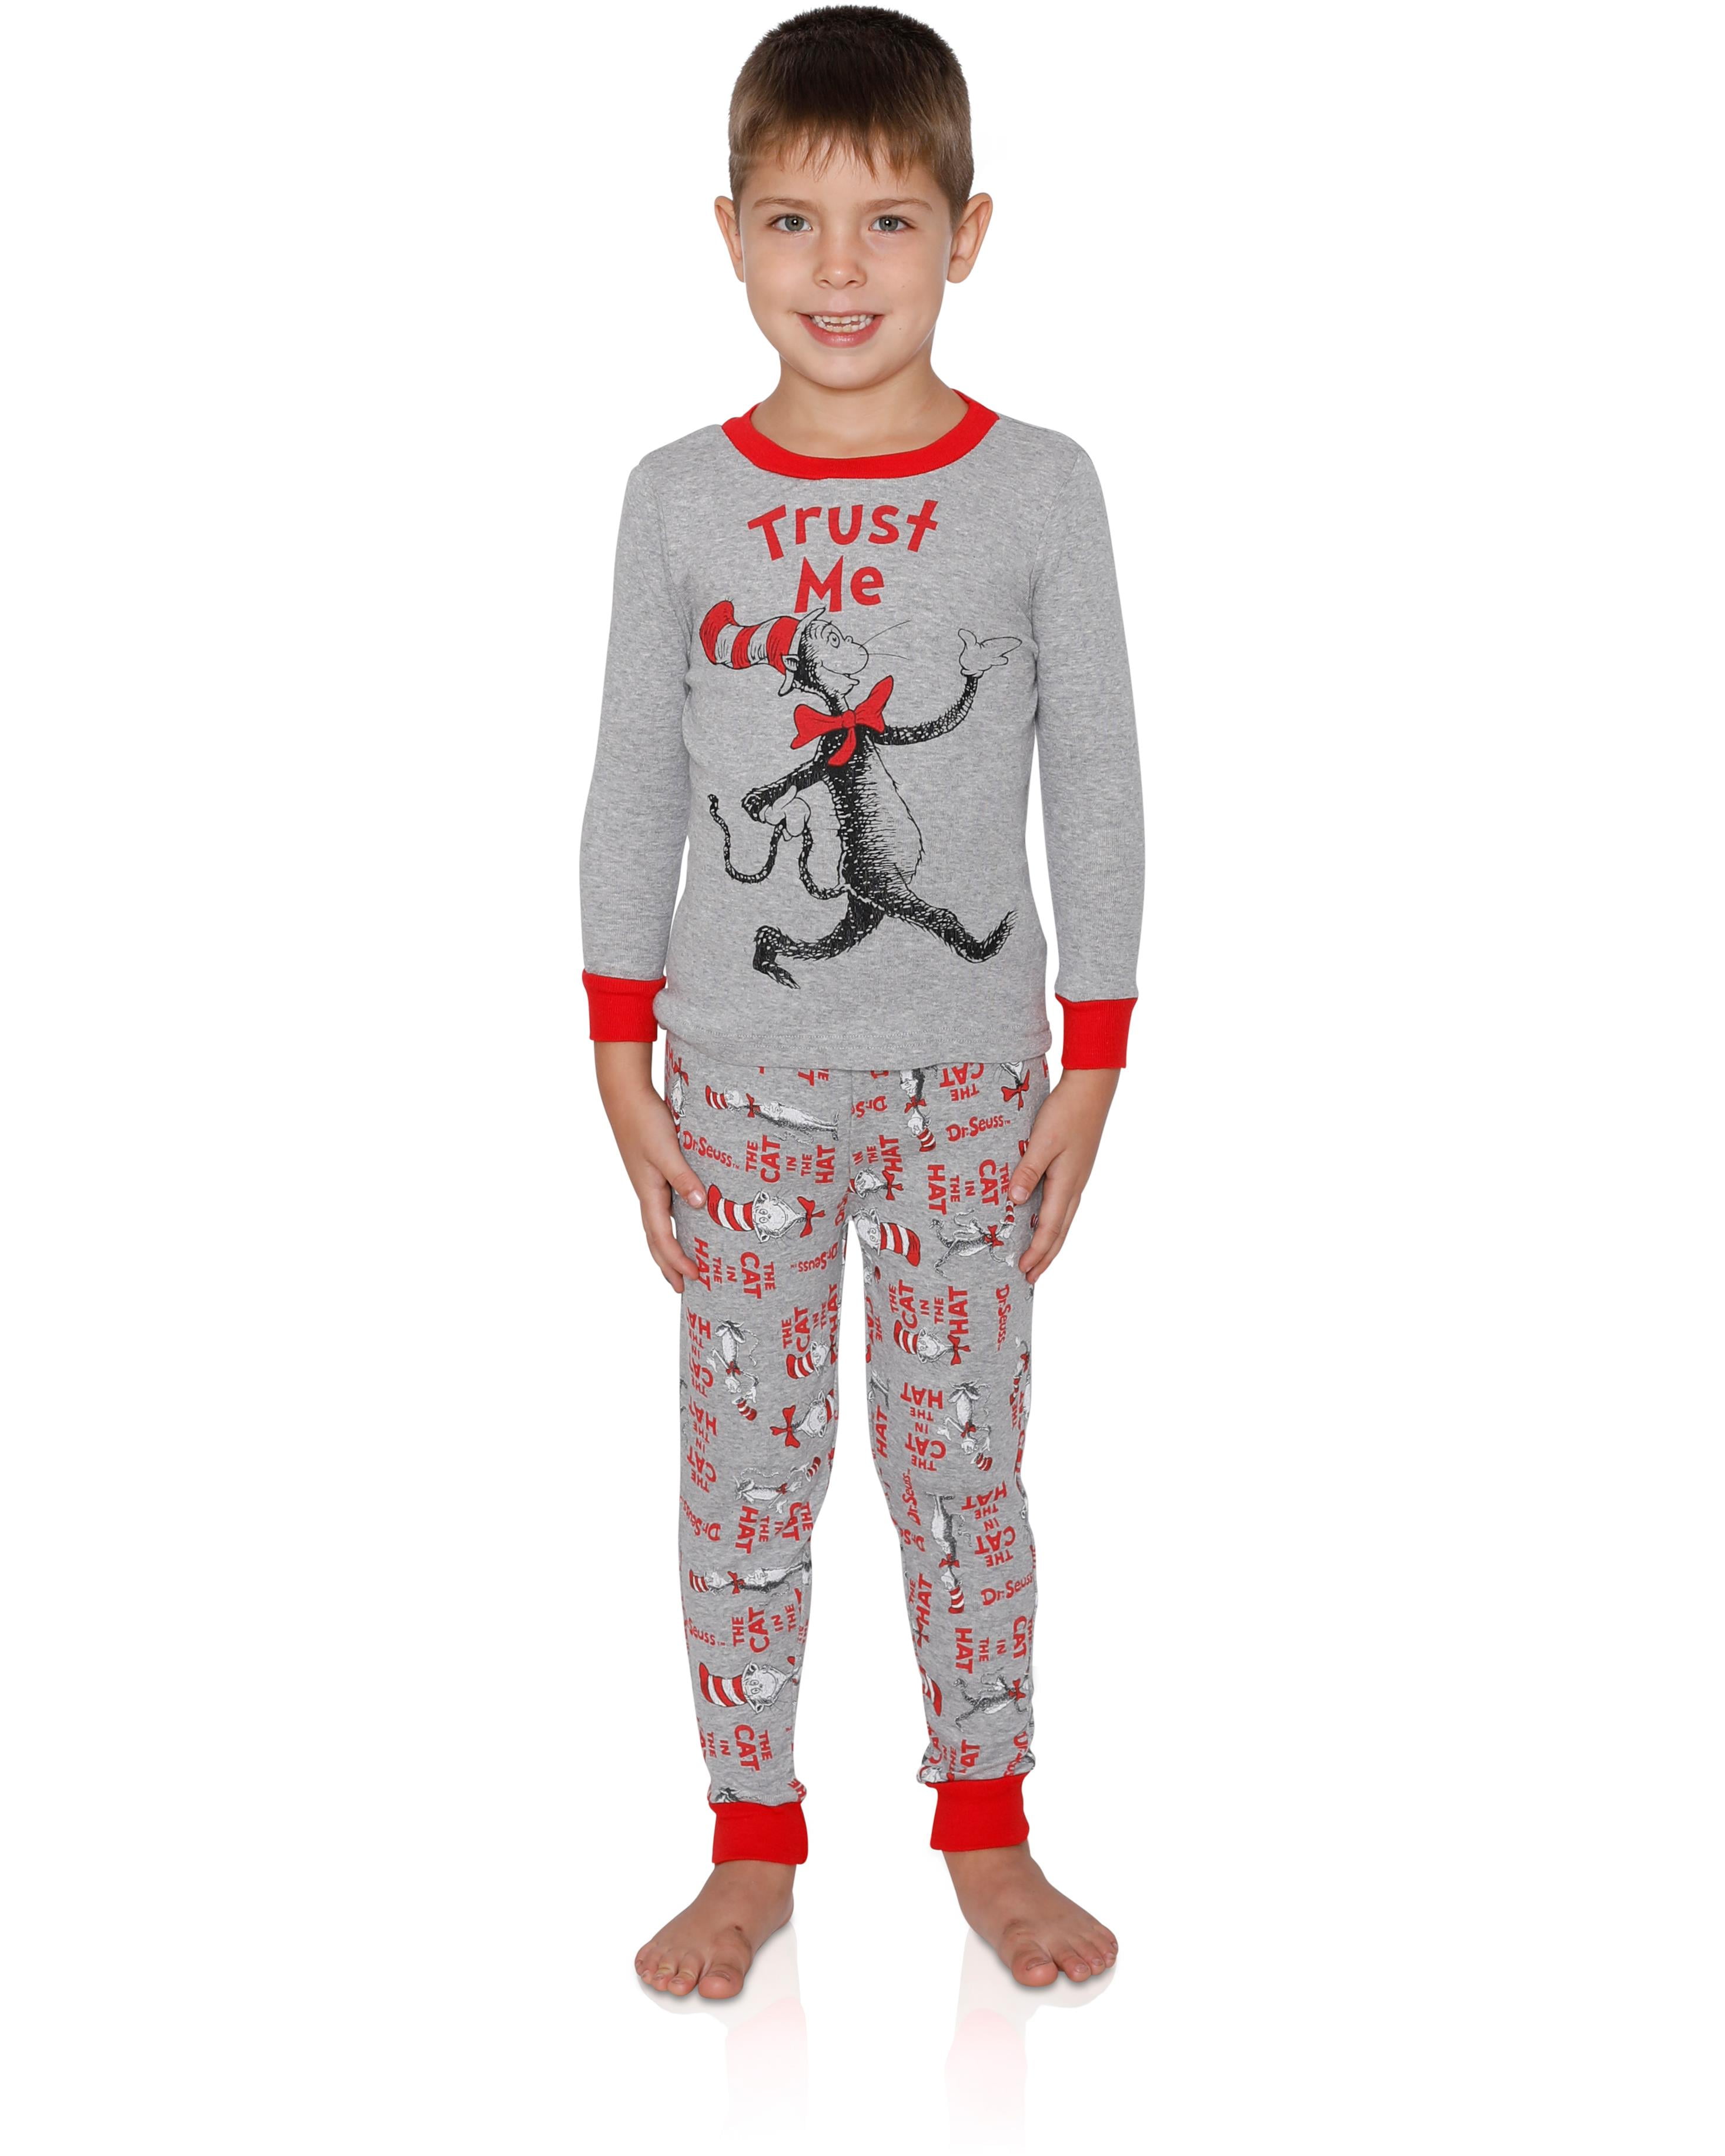 Toddler Boys Kids Cotton Character Pyjamas Set Nightwear Size 2-6 Years 